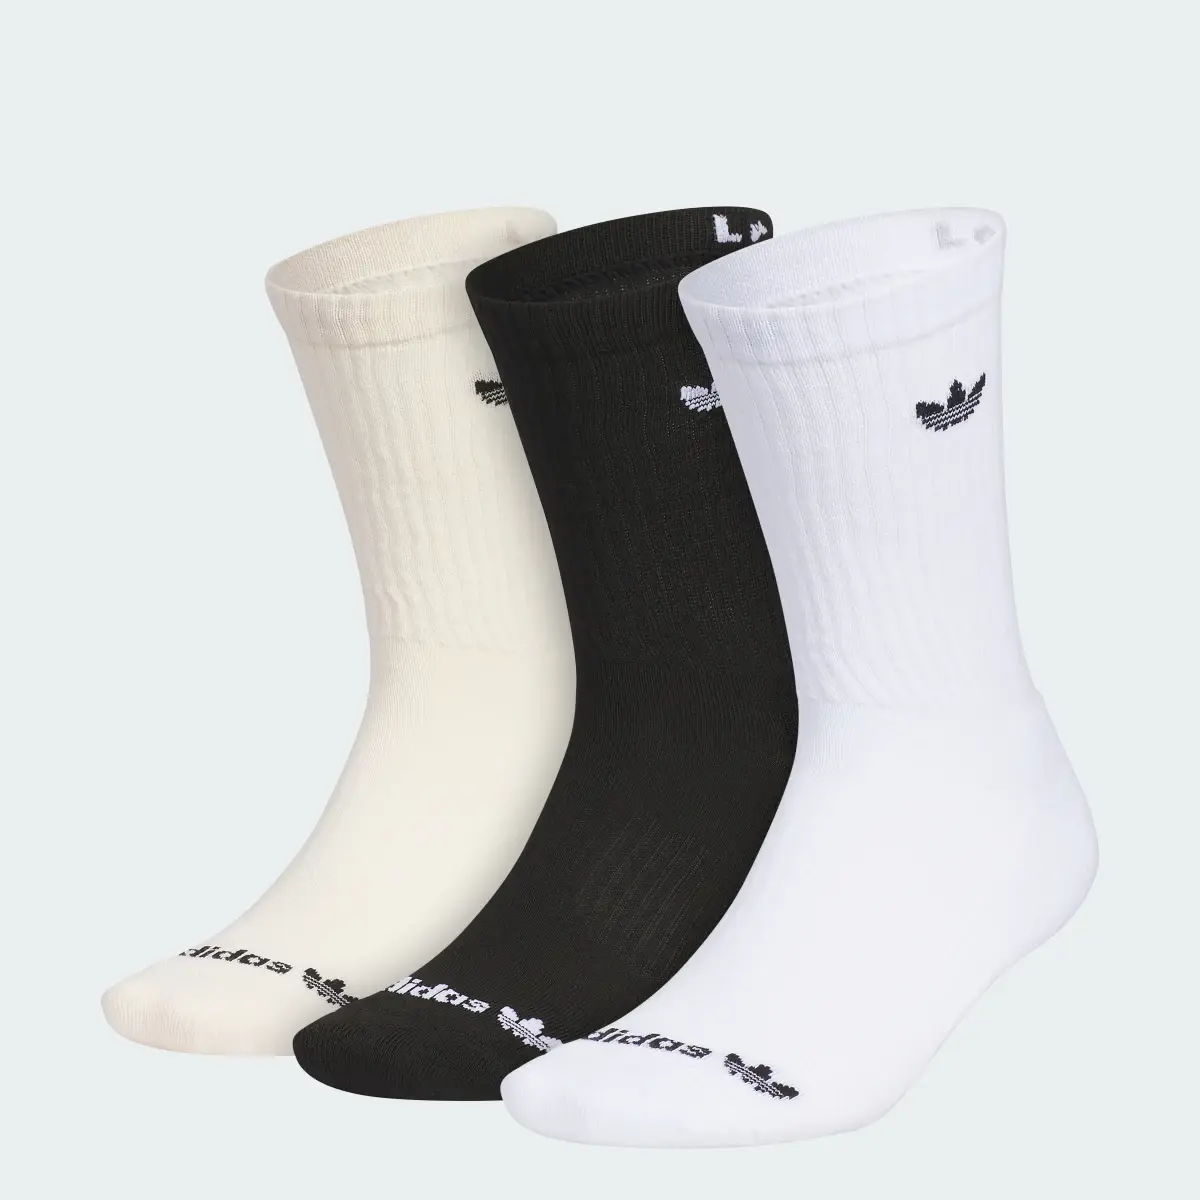 Adidas Originals Trefoil 2.0 3-Pack Crew Socks. 1